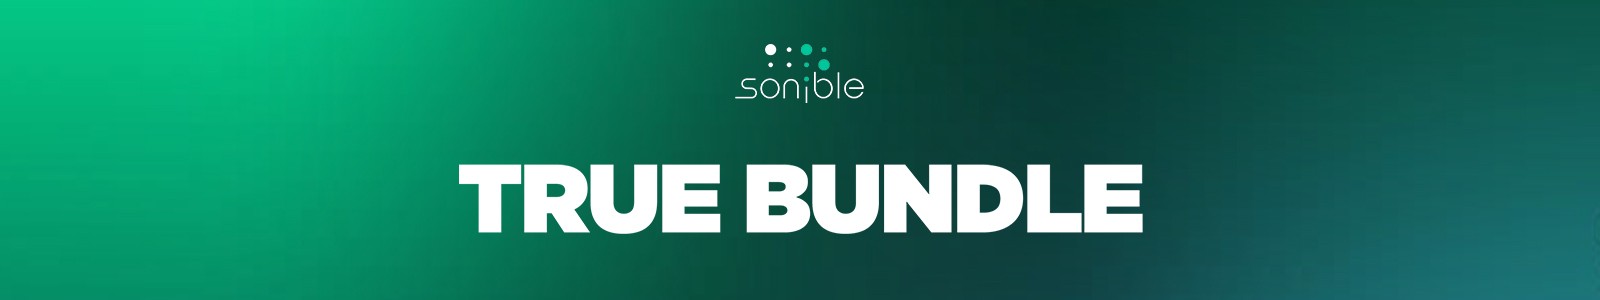 True Bundle by Sonible